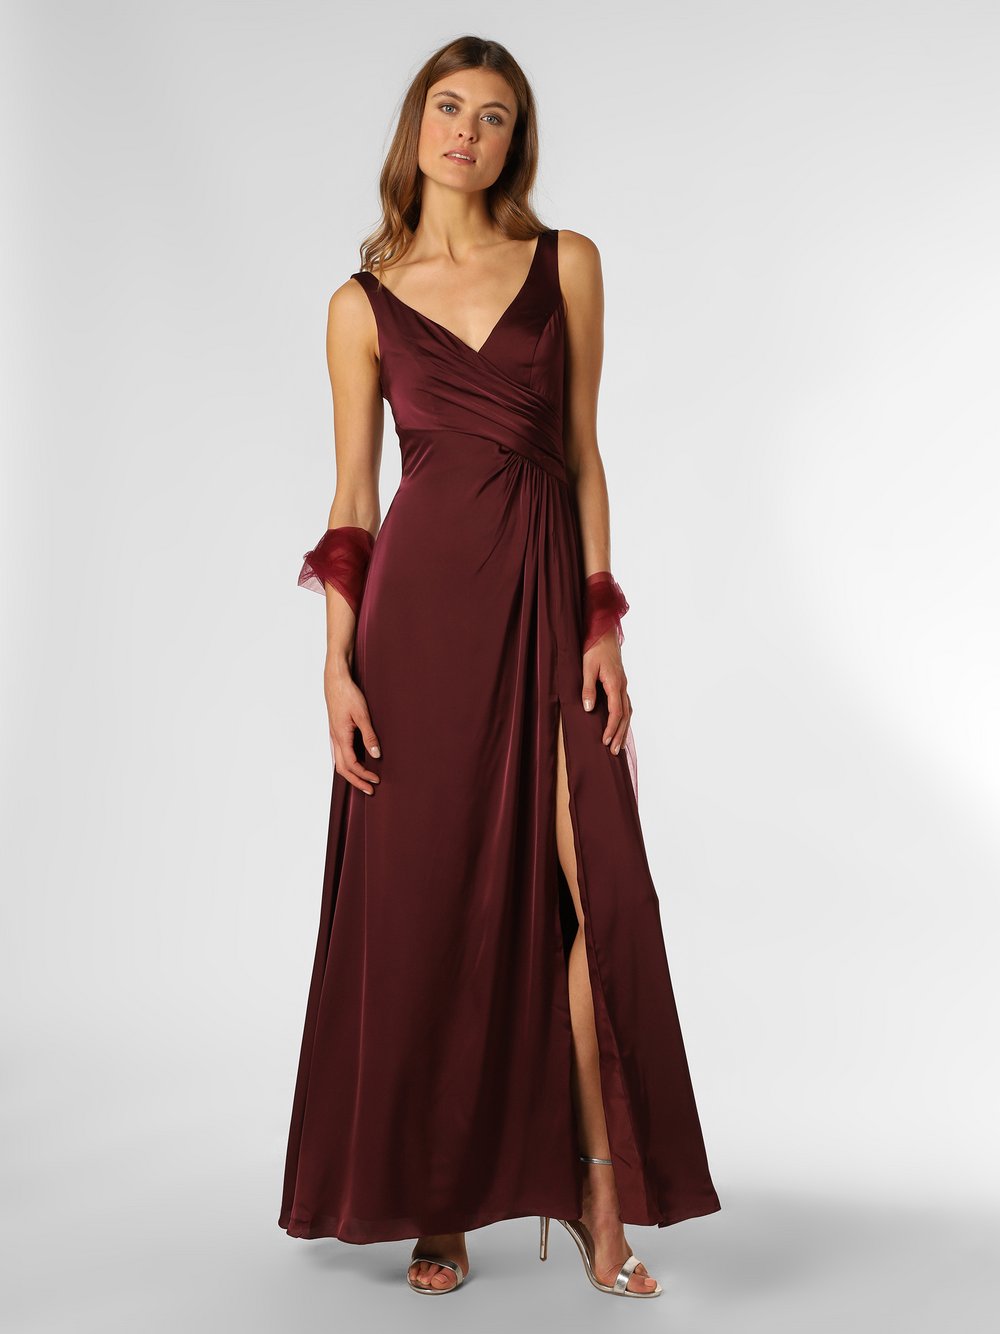 Unique - Damska sukienka wieczorowa z etolą, czerwony|lila